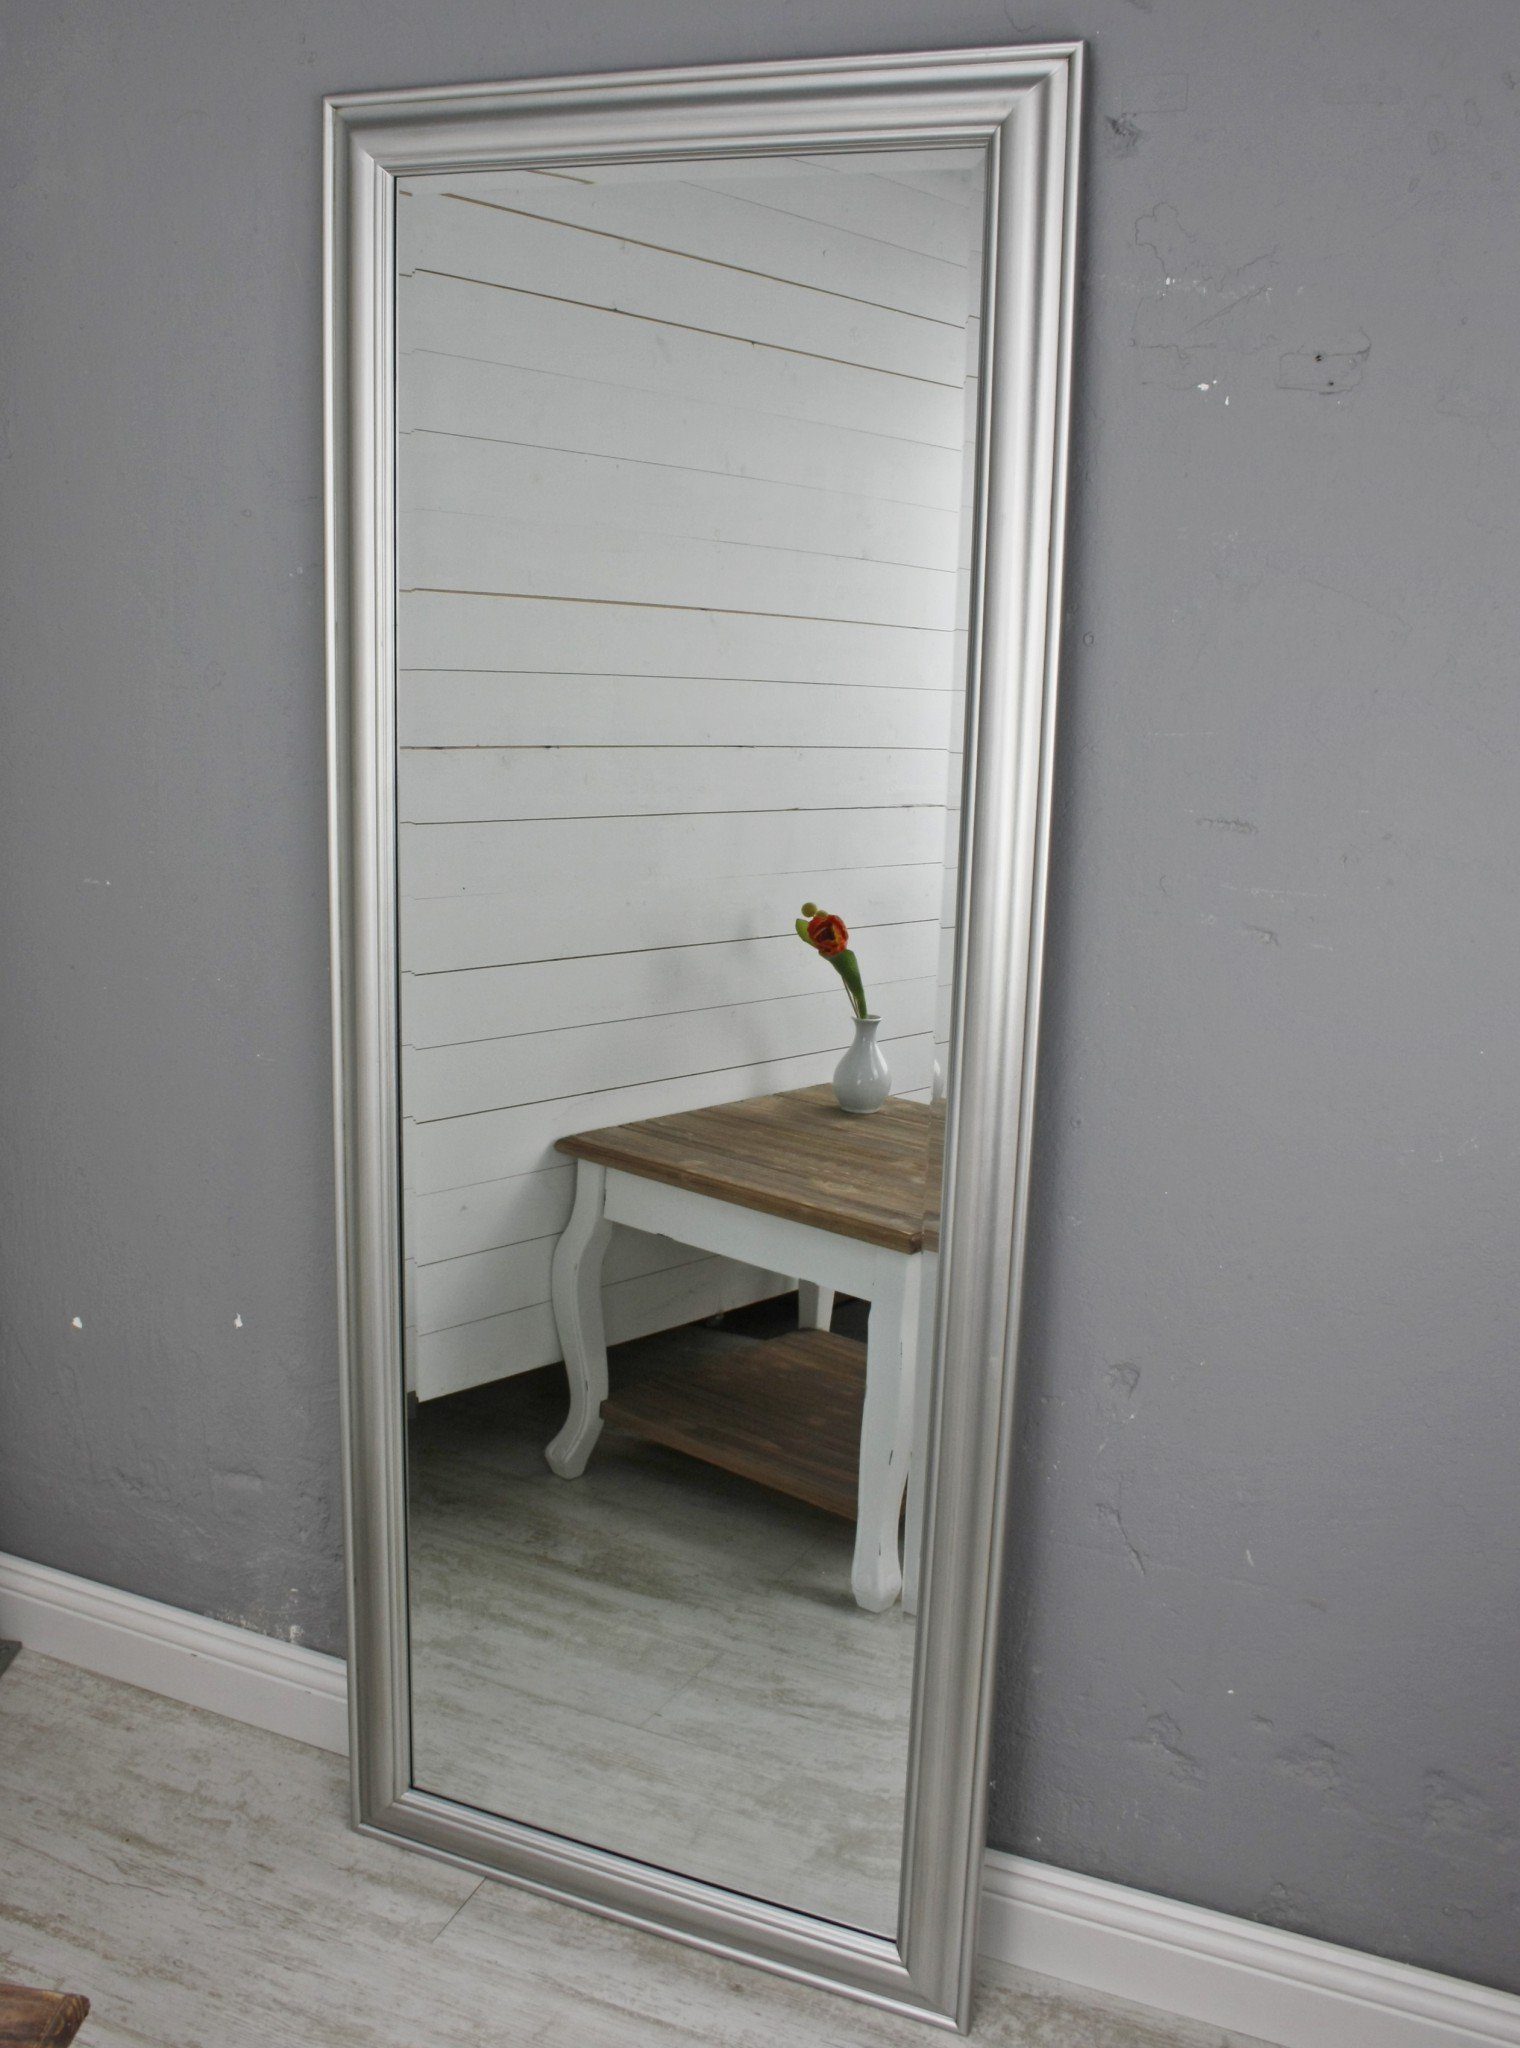 150cm, Wandspiegel Landhausstil silber klassischer elbmöbel 150x60x7 silber schlicht Spiegel: Spiegel Wandspiegel